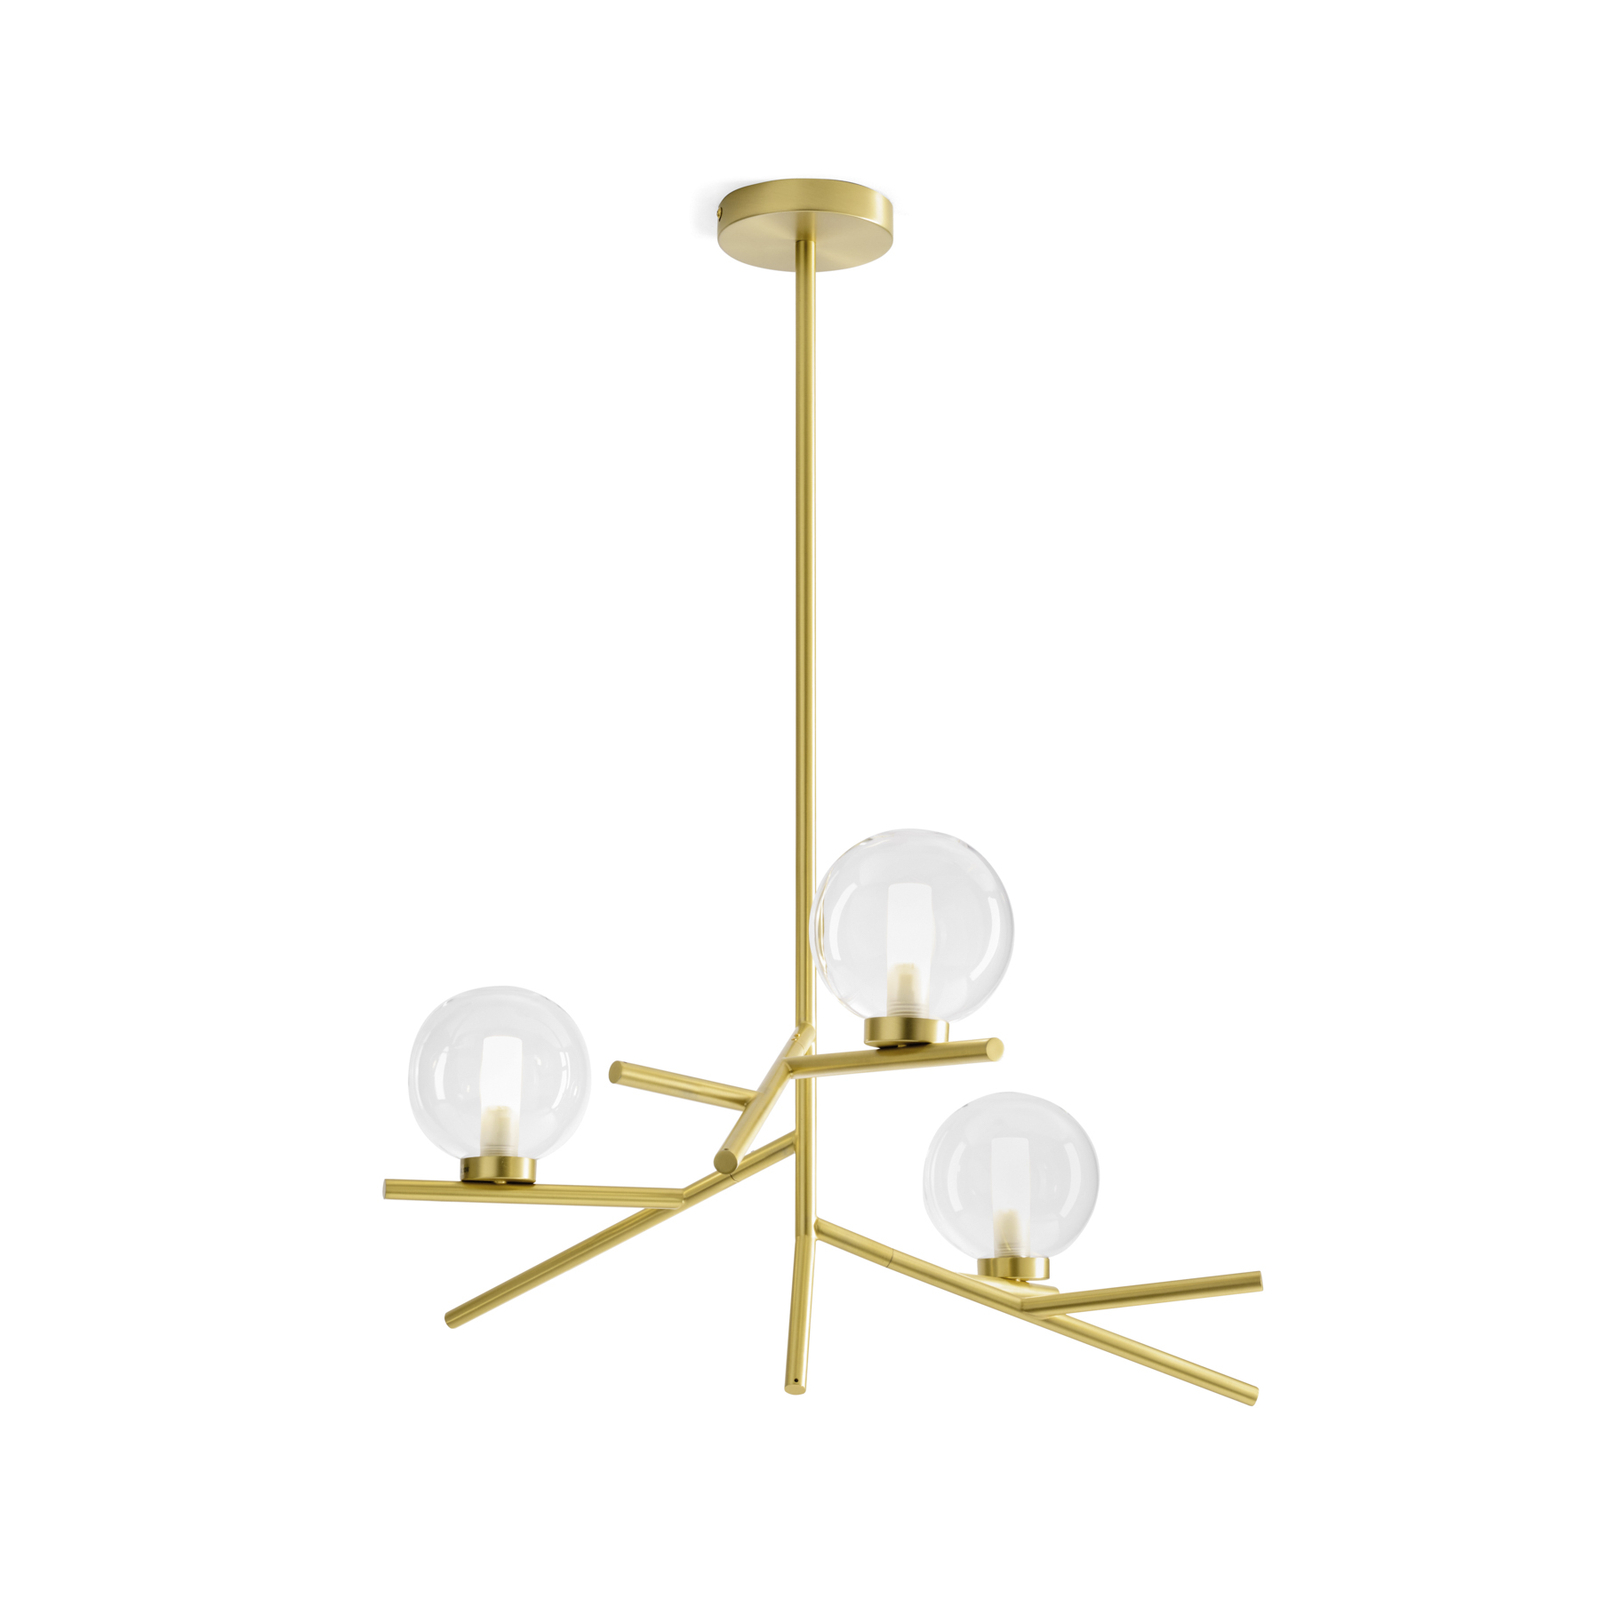 Hanglamp Camely, goud geborsteld/helder, 3-lamps